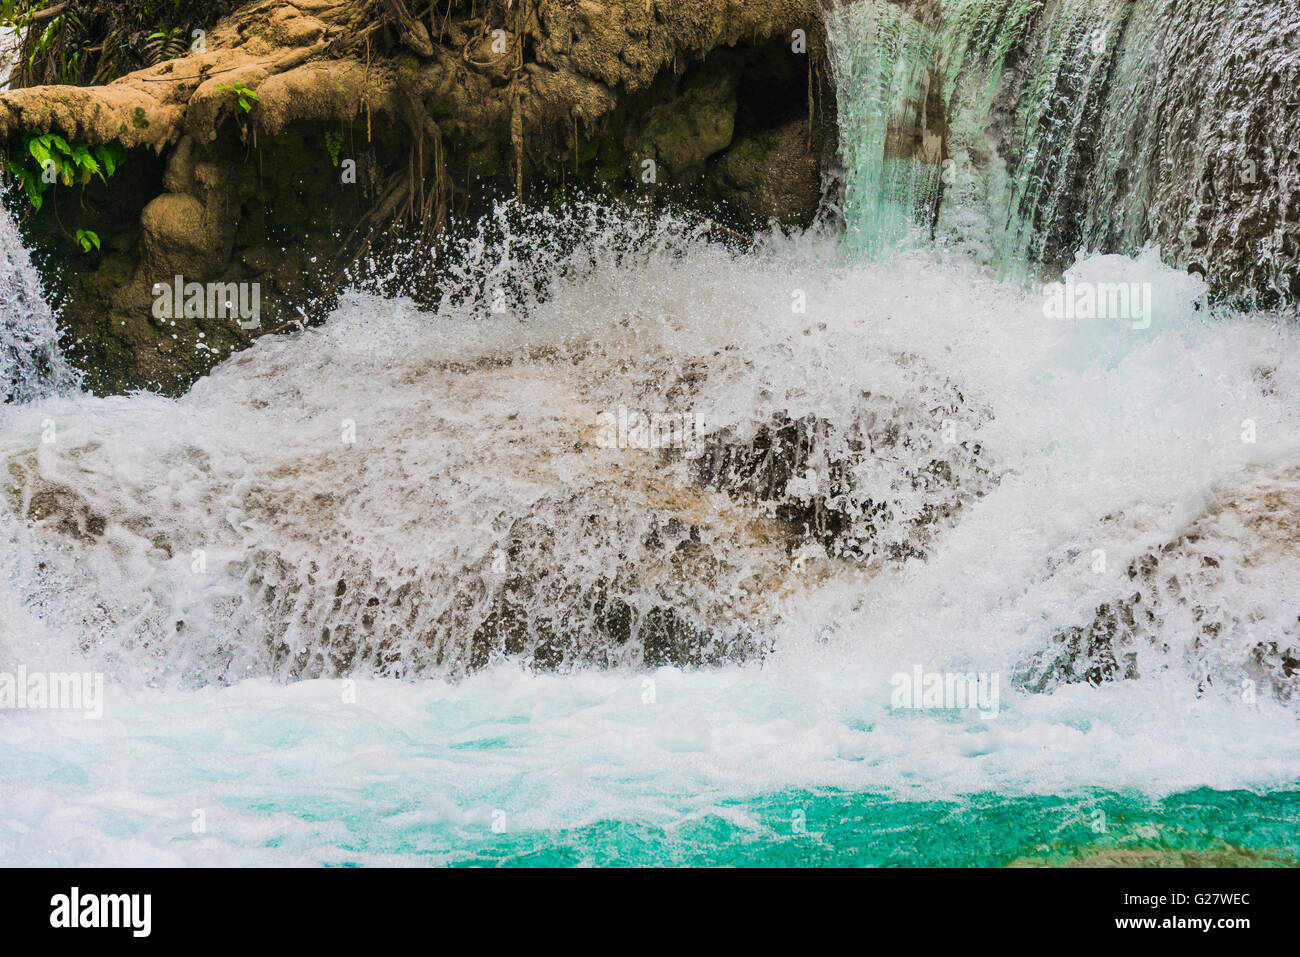 Les projections d'eau d'une cascade, Tat Cascades de Kuang Si, Luang Prabang, Laos, Louangphabang Banque D'Images